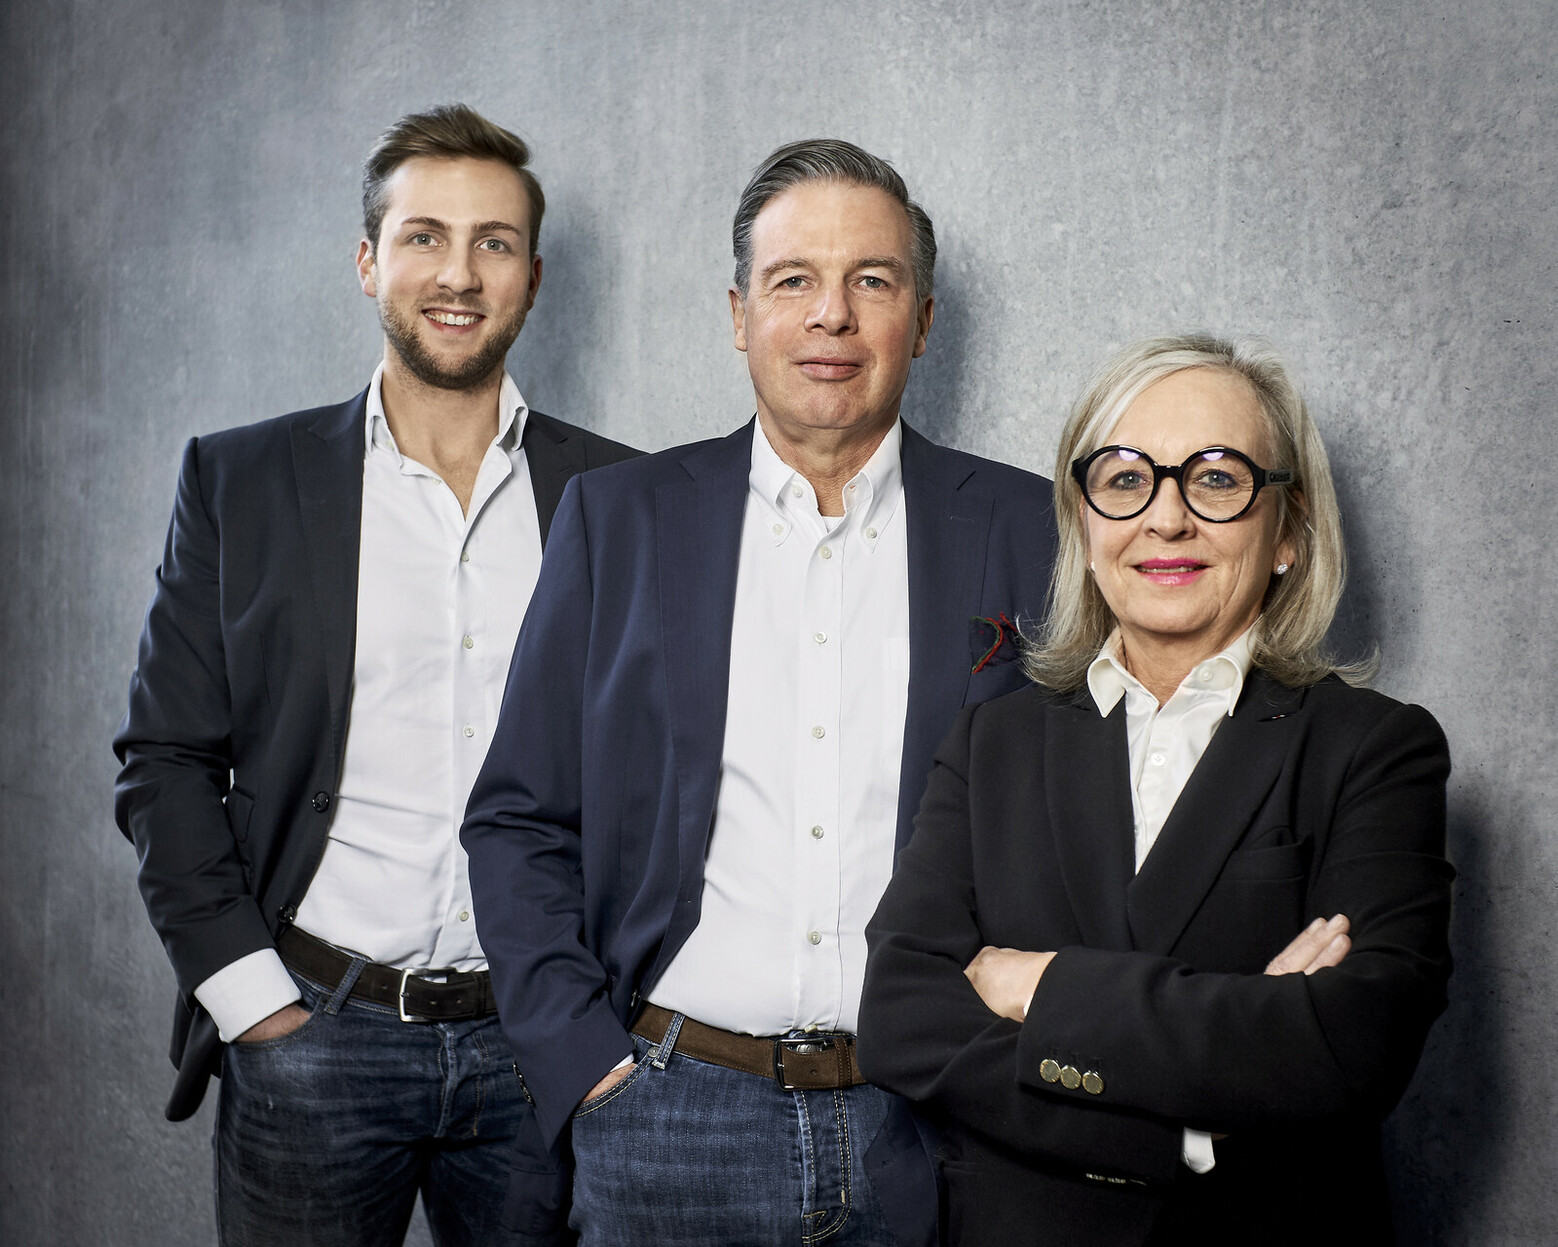 Das Familienunternehmen Wolf GmbH wird bereits in 3. Generation geführt und setzt seit 2015 auf die All-in-One-Software Streit V.1. V.l.n.r: Das Geschäftsführer-Team Marius Wolf, Kurt Wolf und Michaela Stumpe-Wolf. (Quelle: Wolf GmbH) 